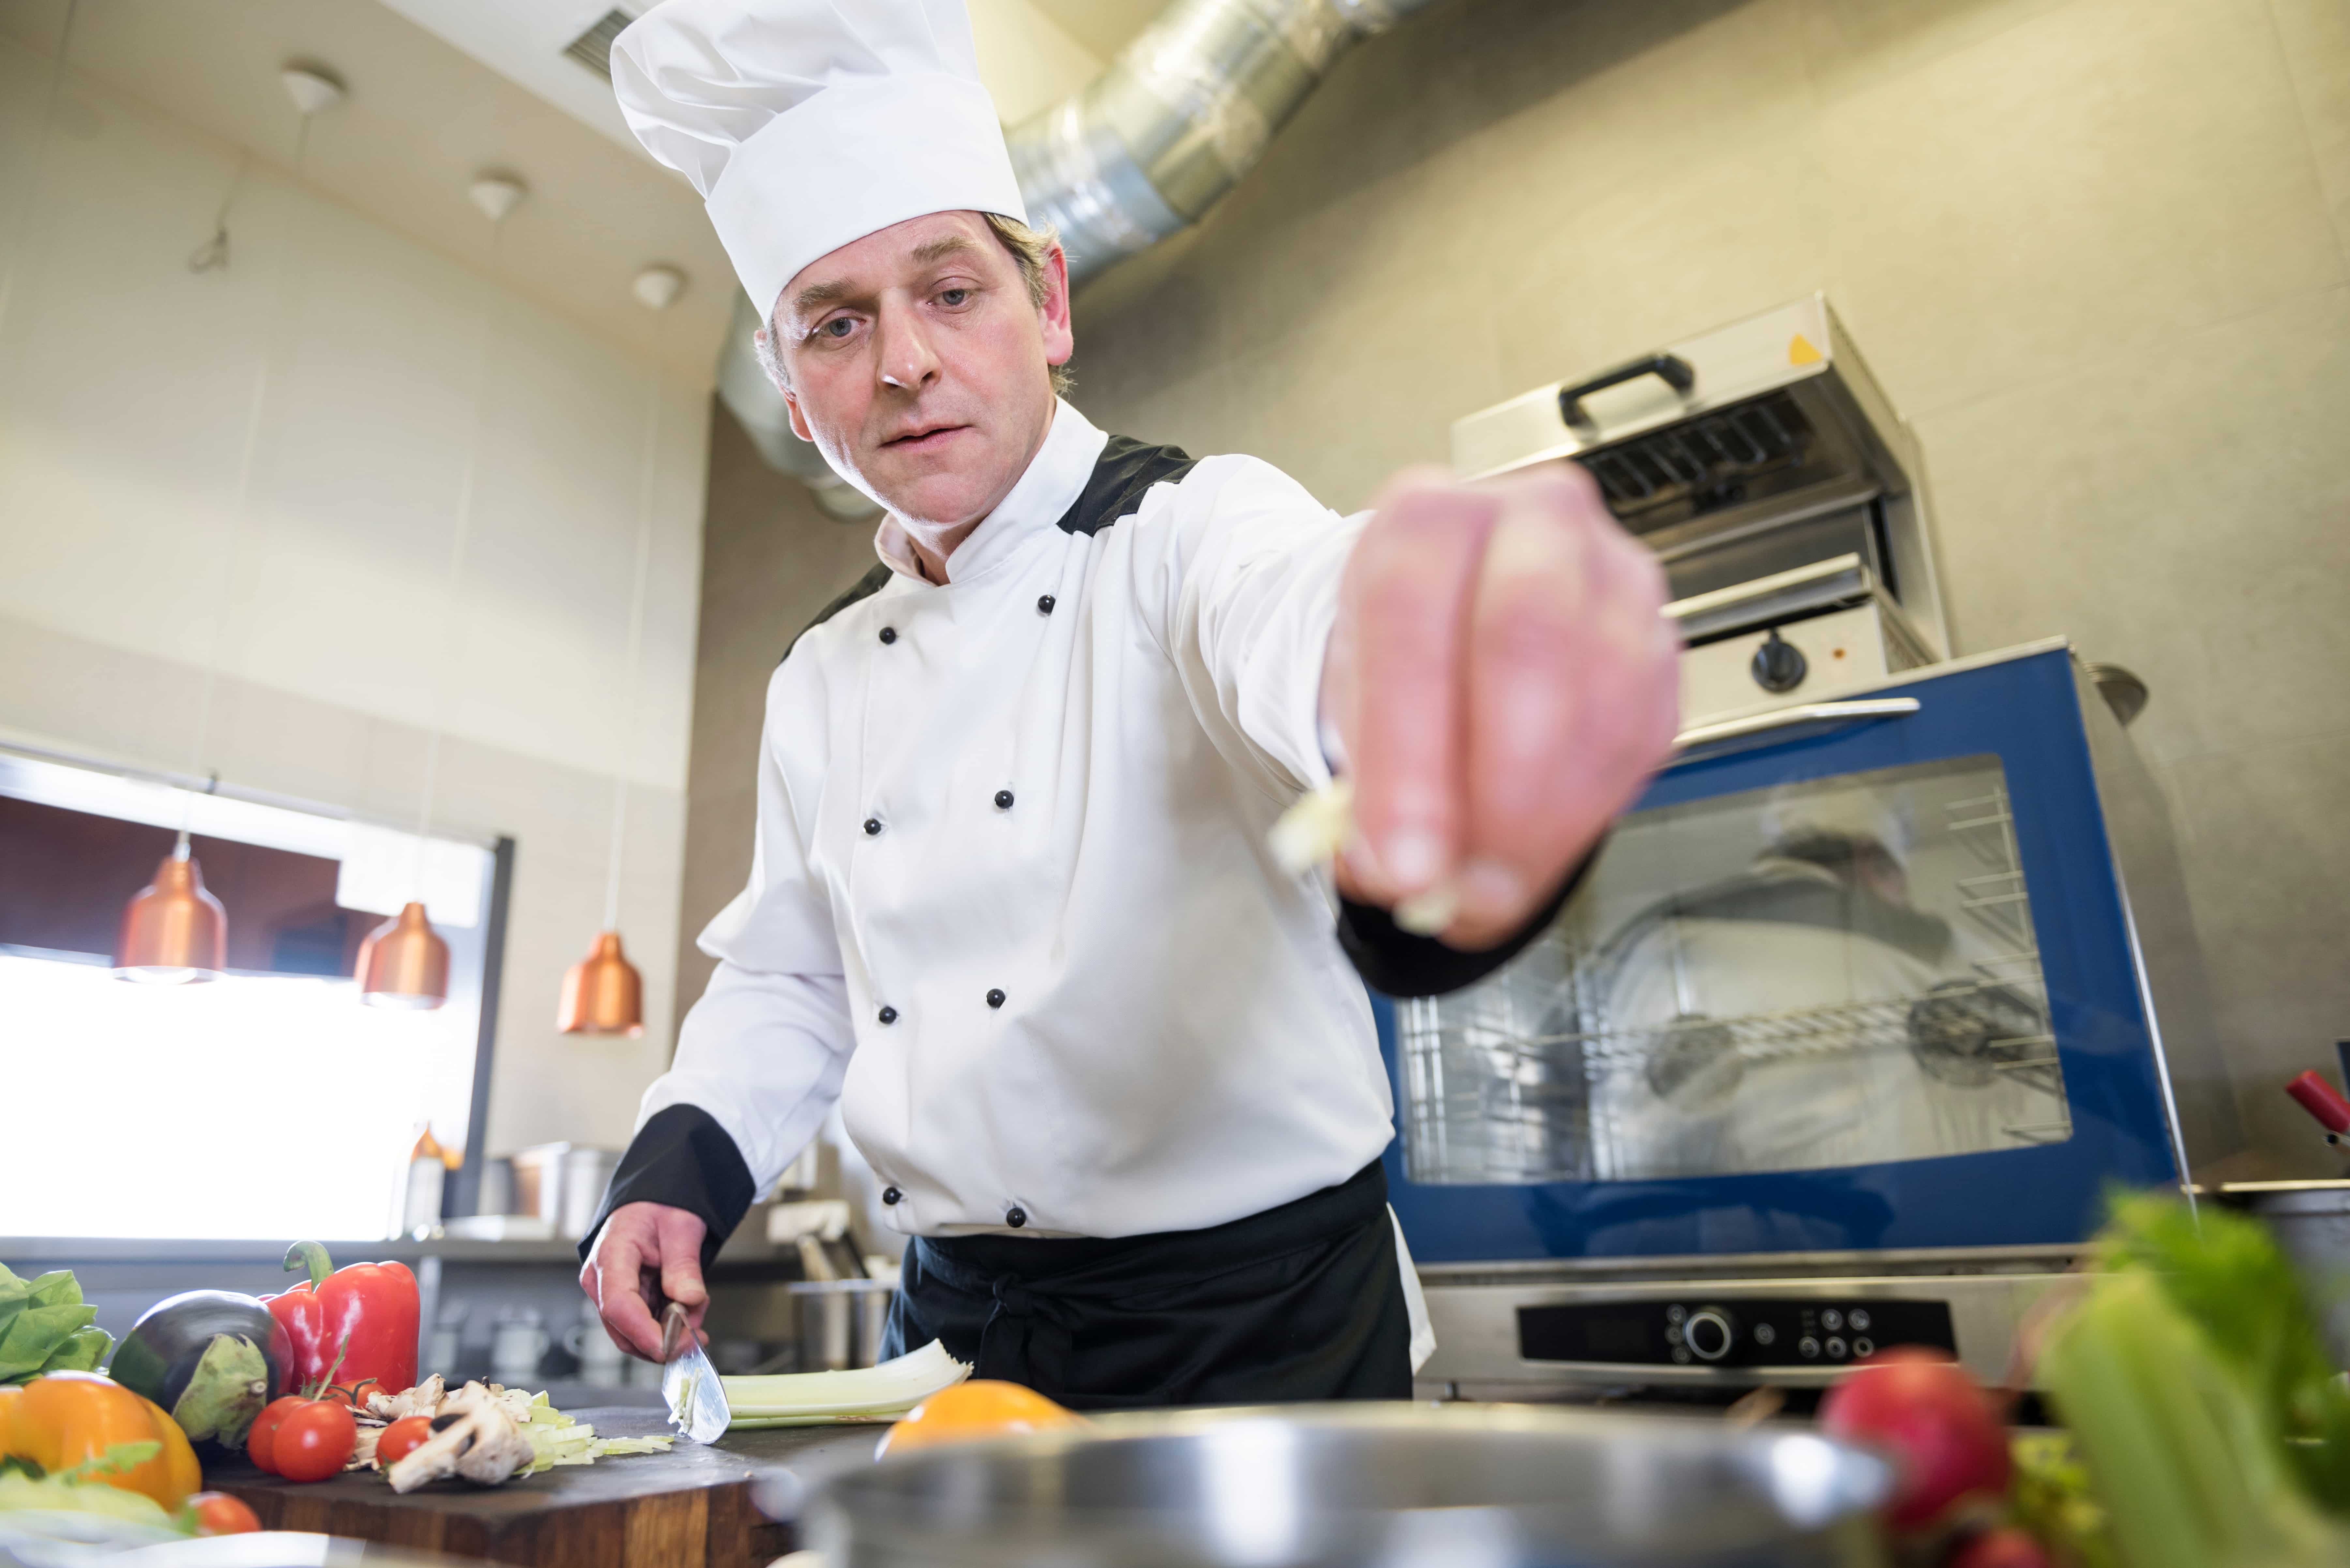 chef verifica la calidad de los alimentos en un comedor industrial 